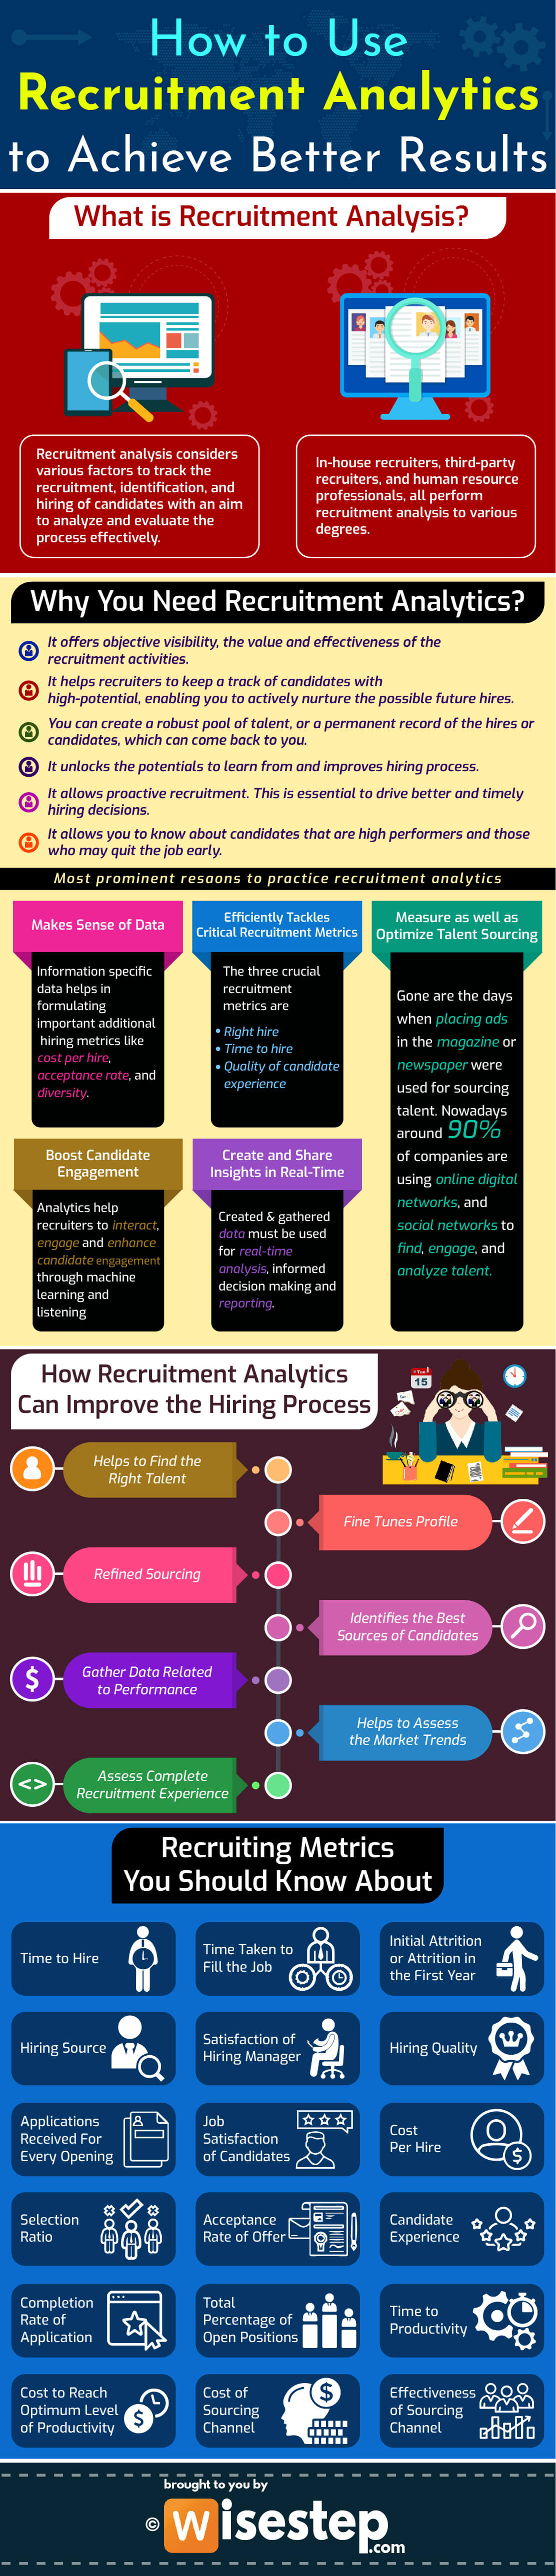 Recruitment Analytics